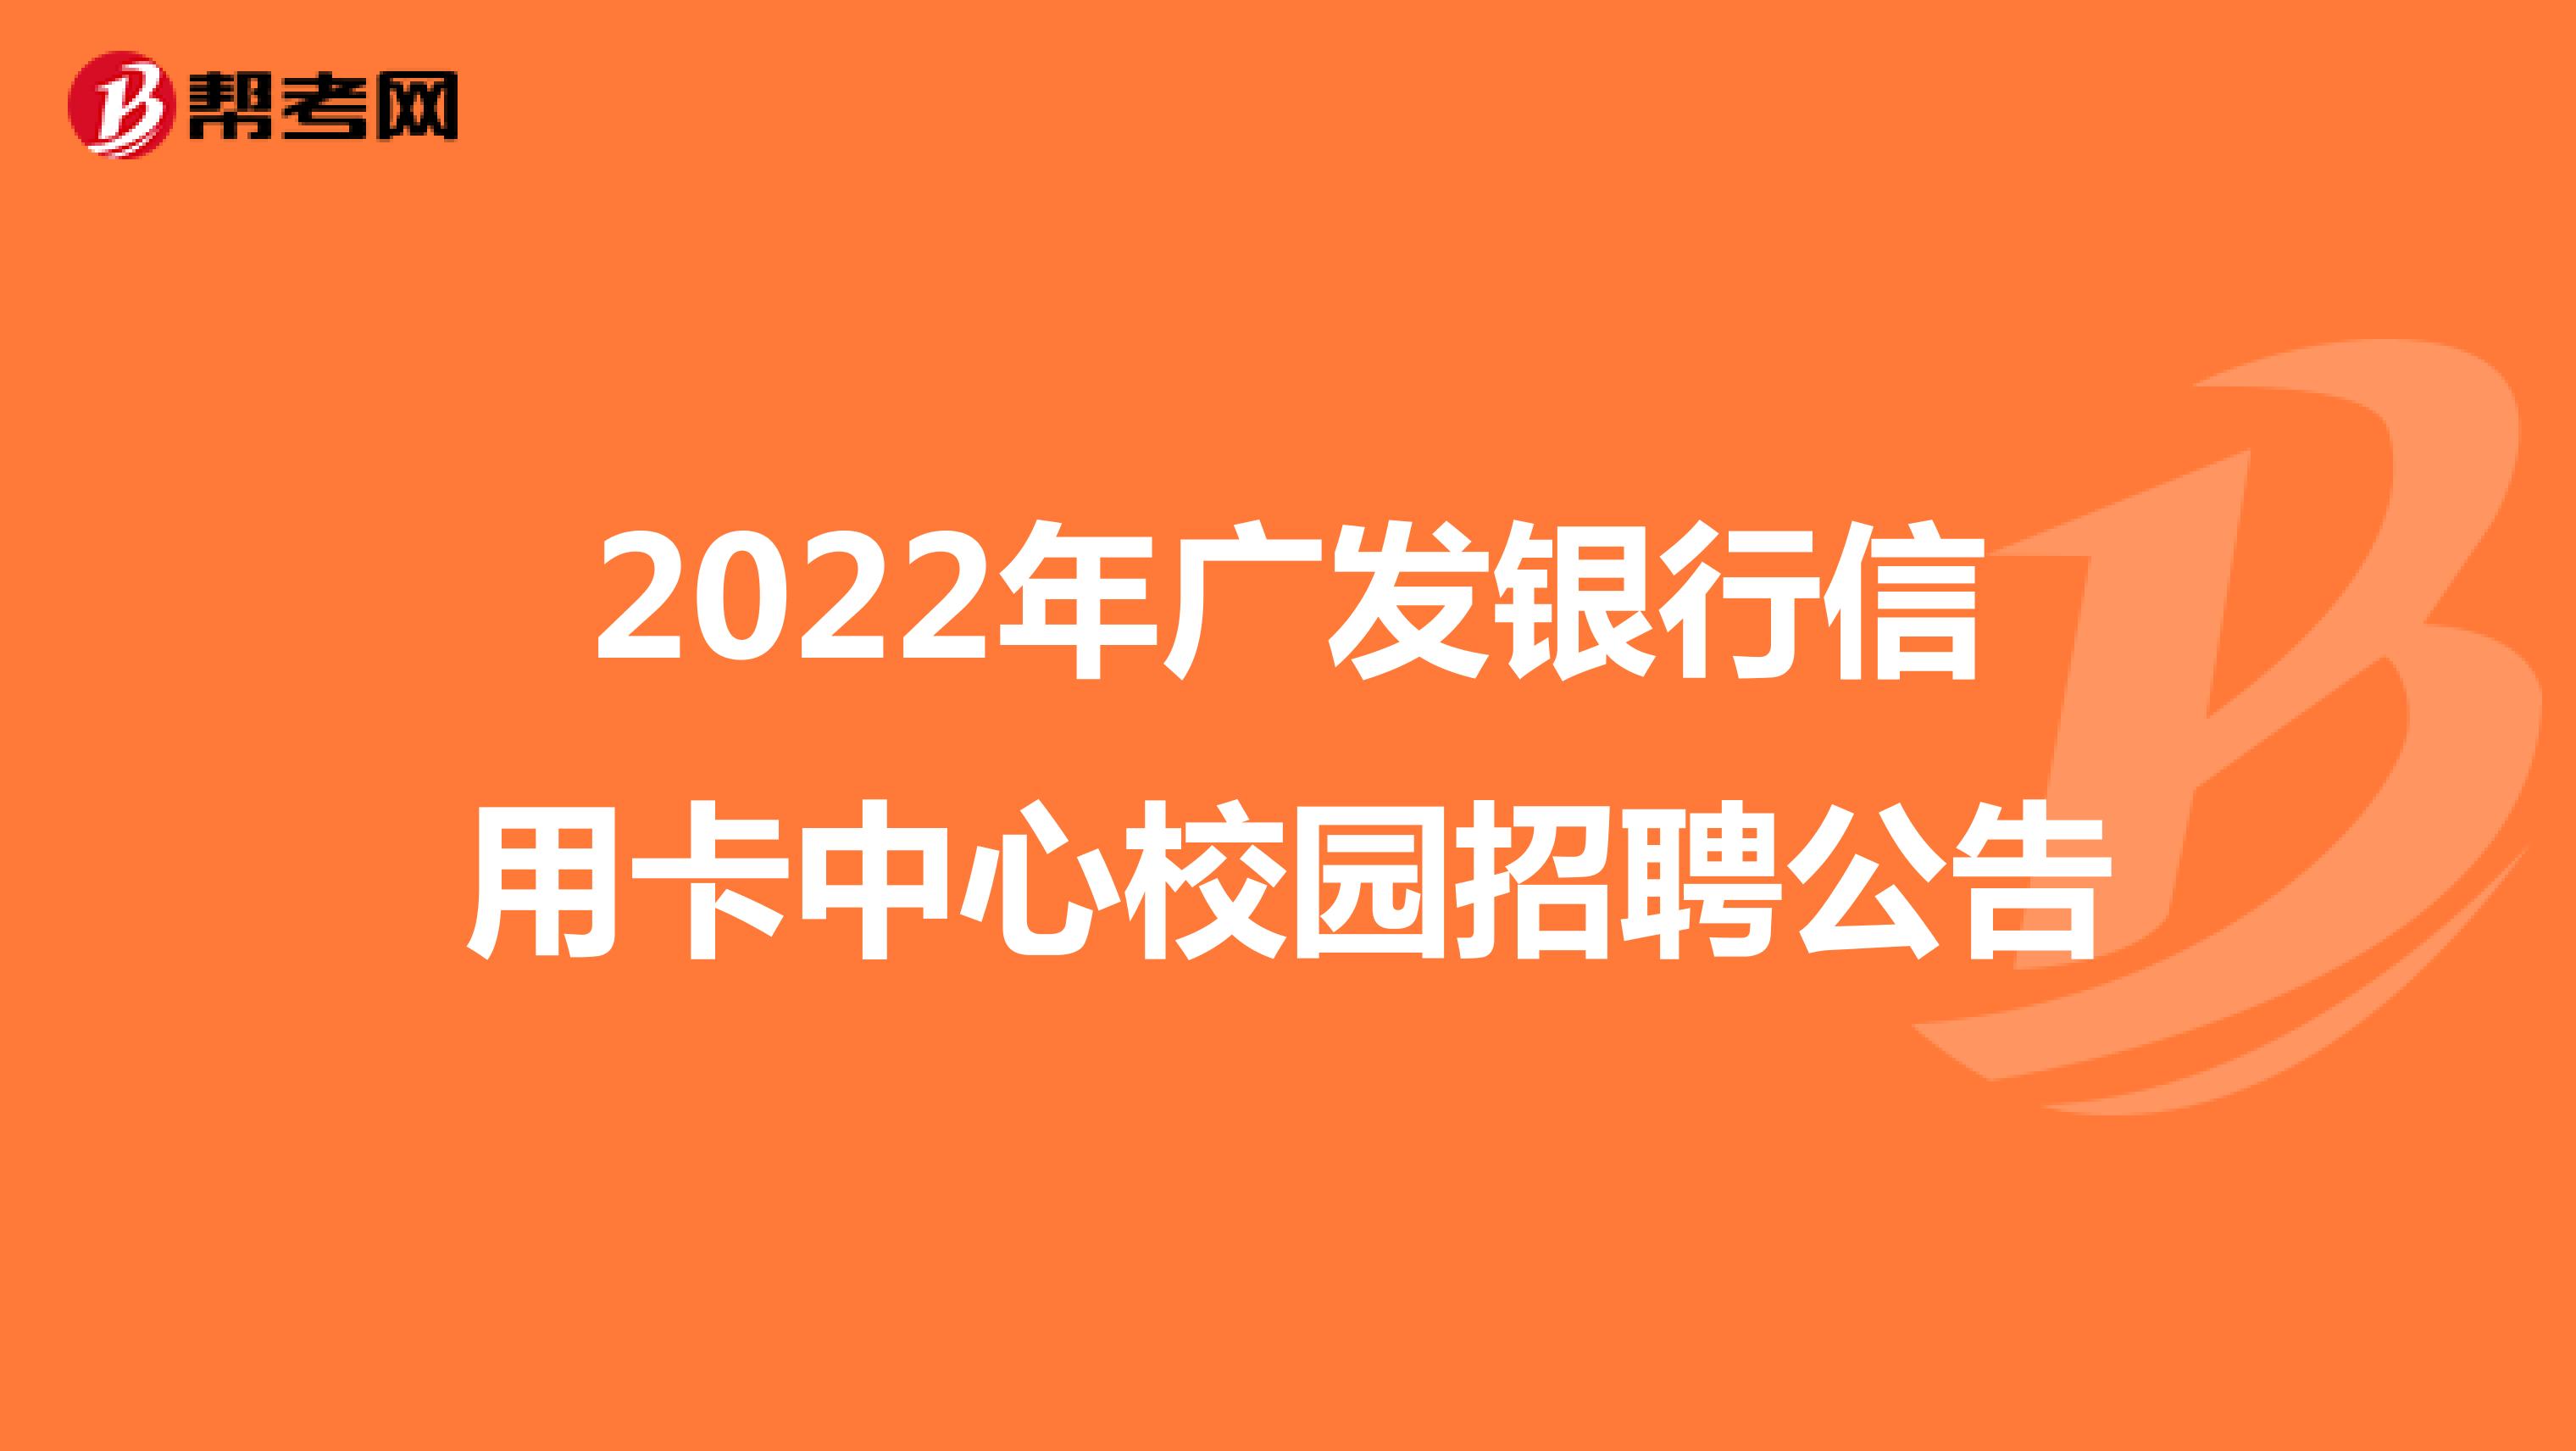 2022年廣發銀行信用卡中心校園招聘公告